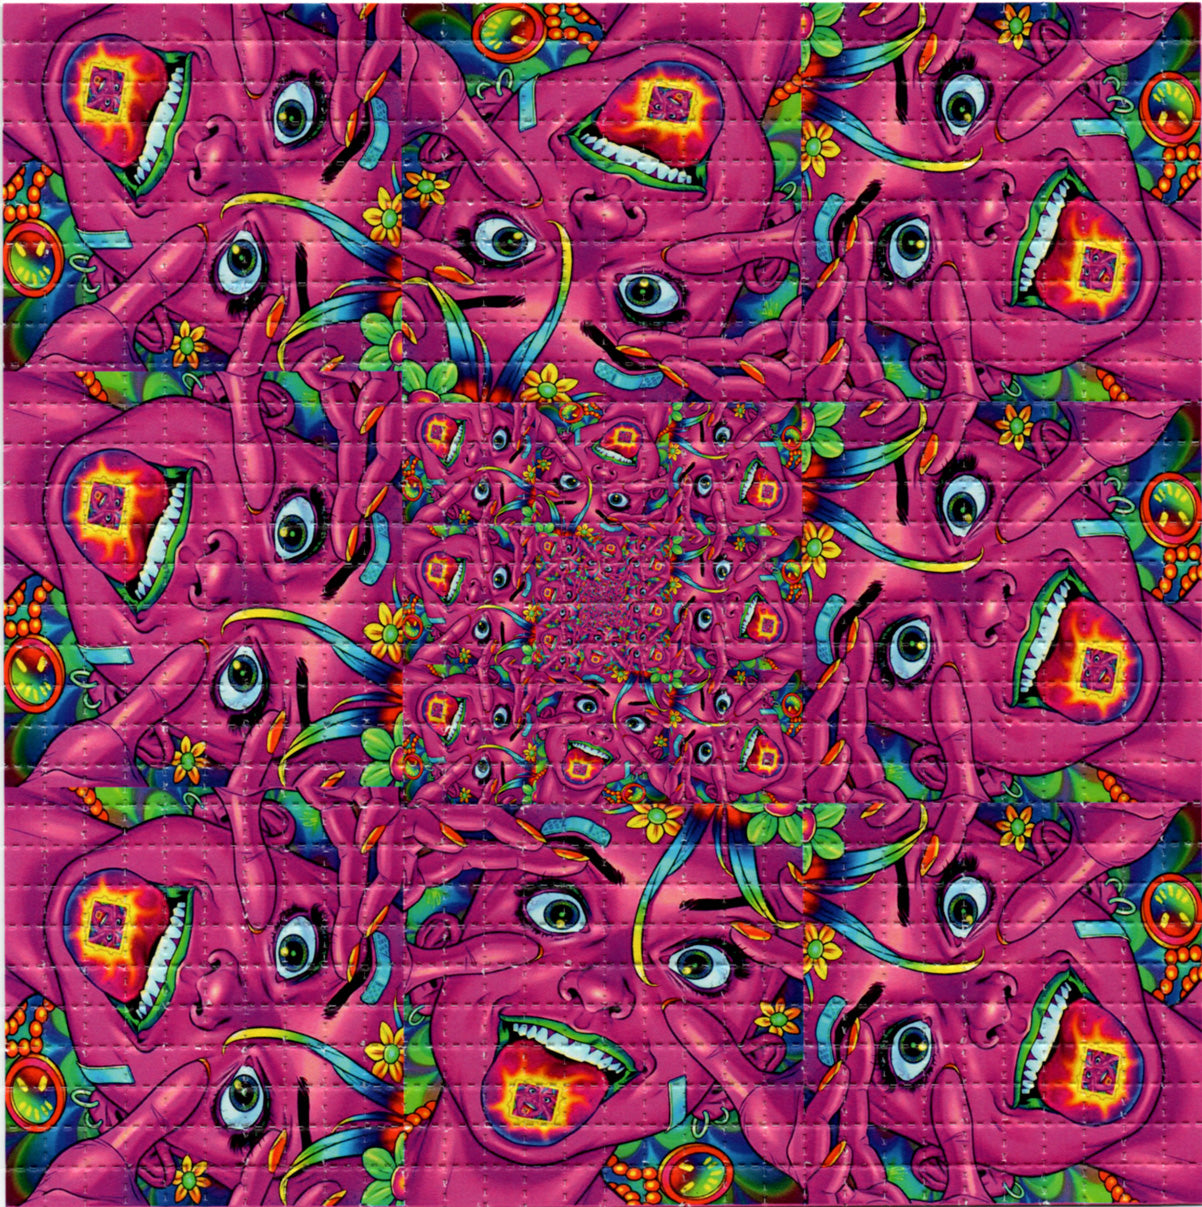 Pink Tab Girl LSD blotter art print